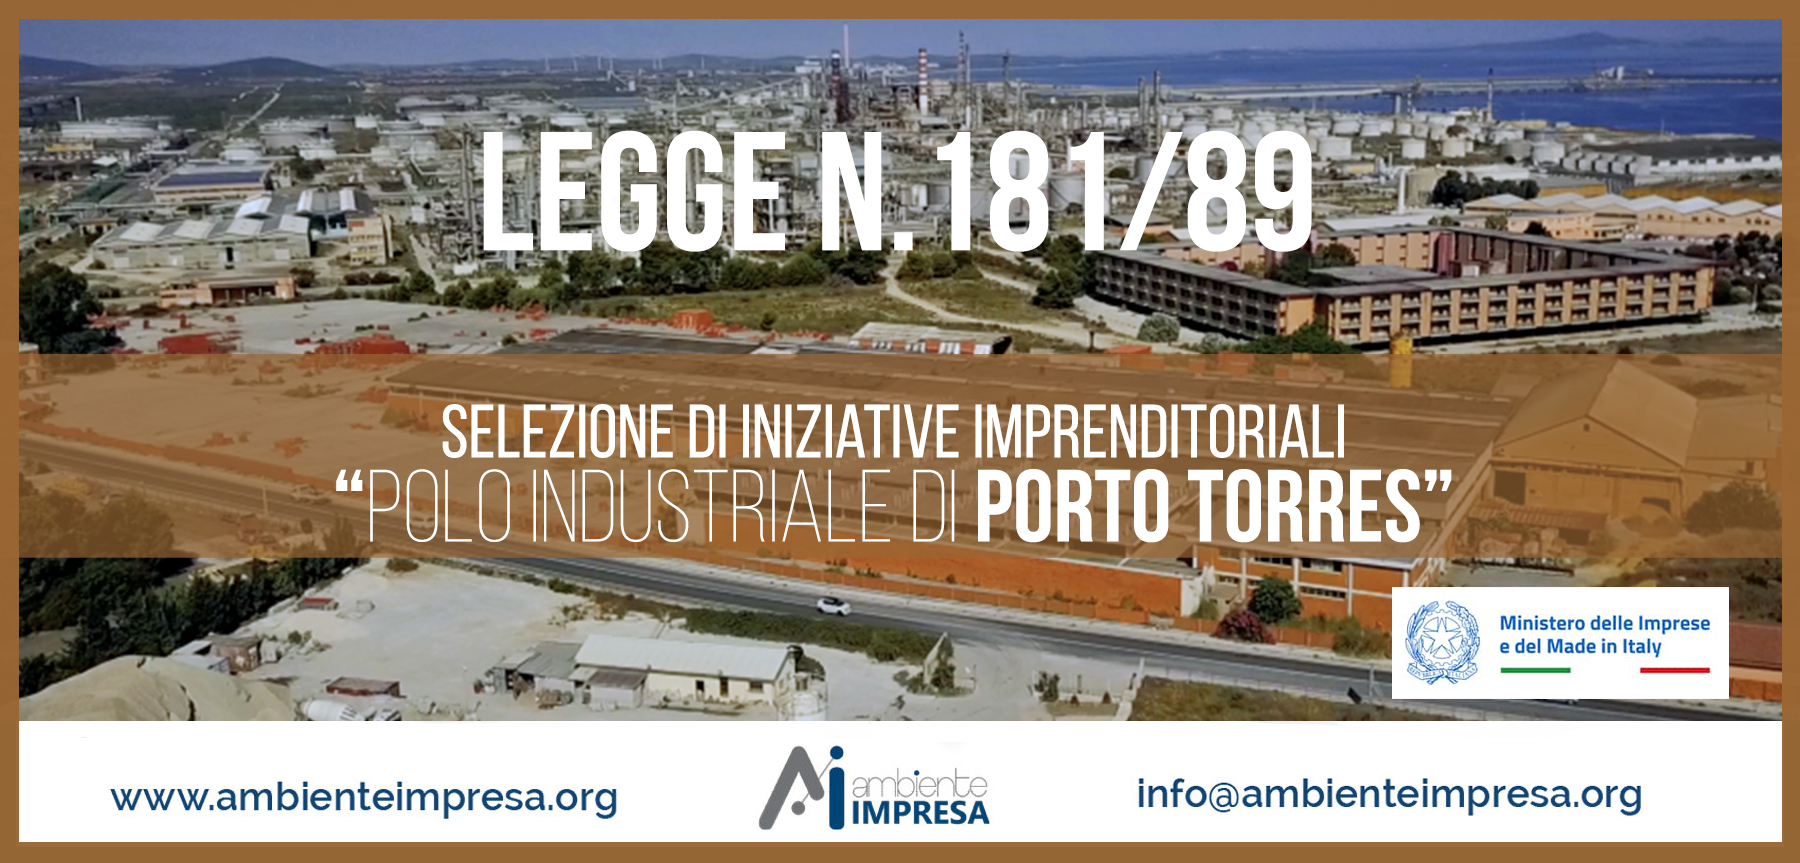 Legge N.181/89 Selezione Iniziative Imprenditoriali " POLO INDUSTRIALE DI PORTO TORRES" - Ambiente Impresa srl - Cagliari